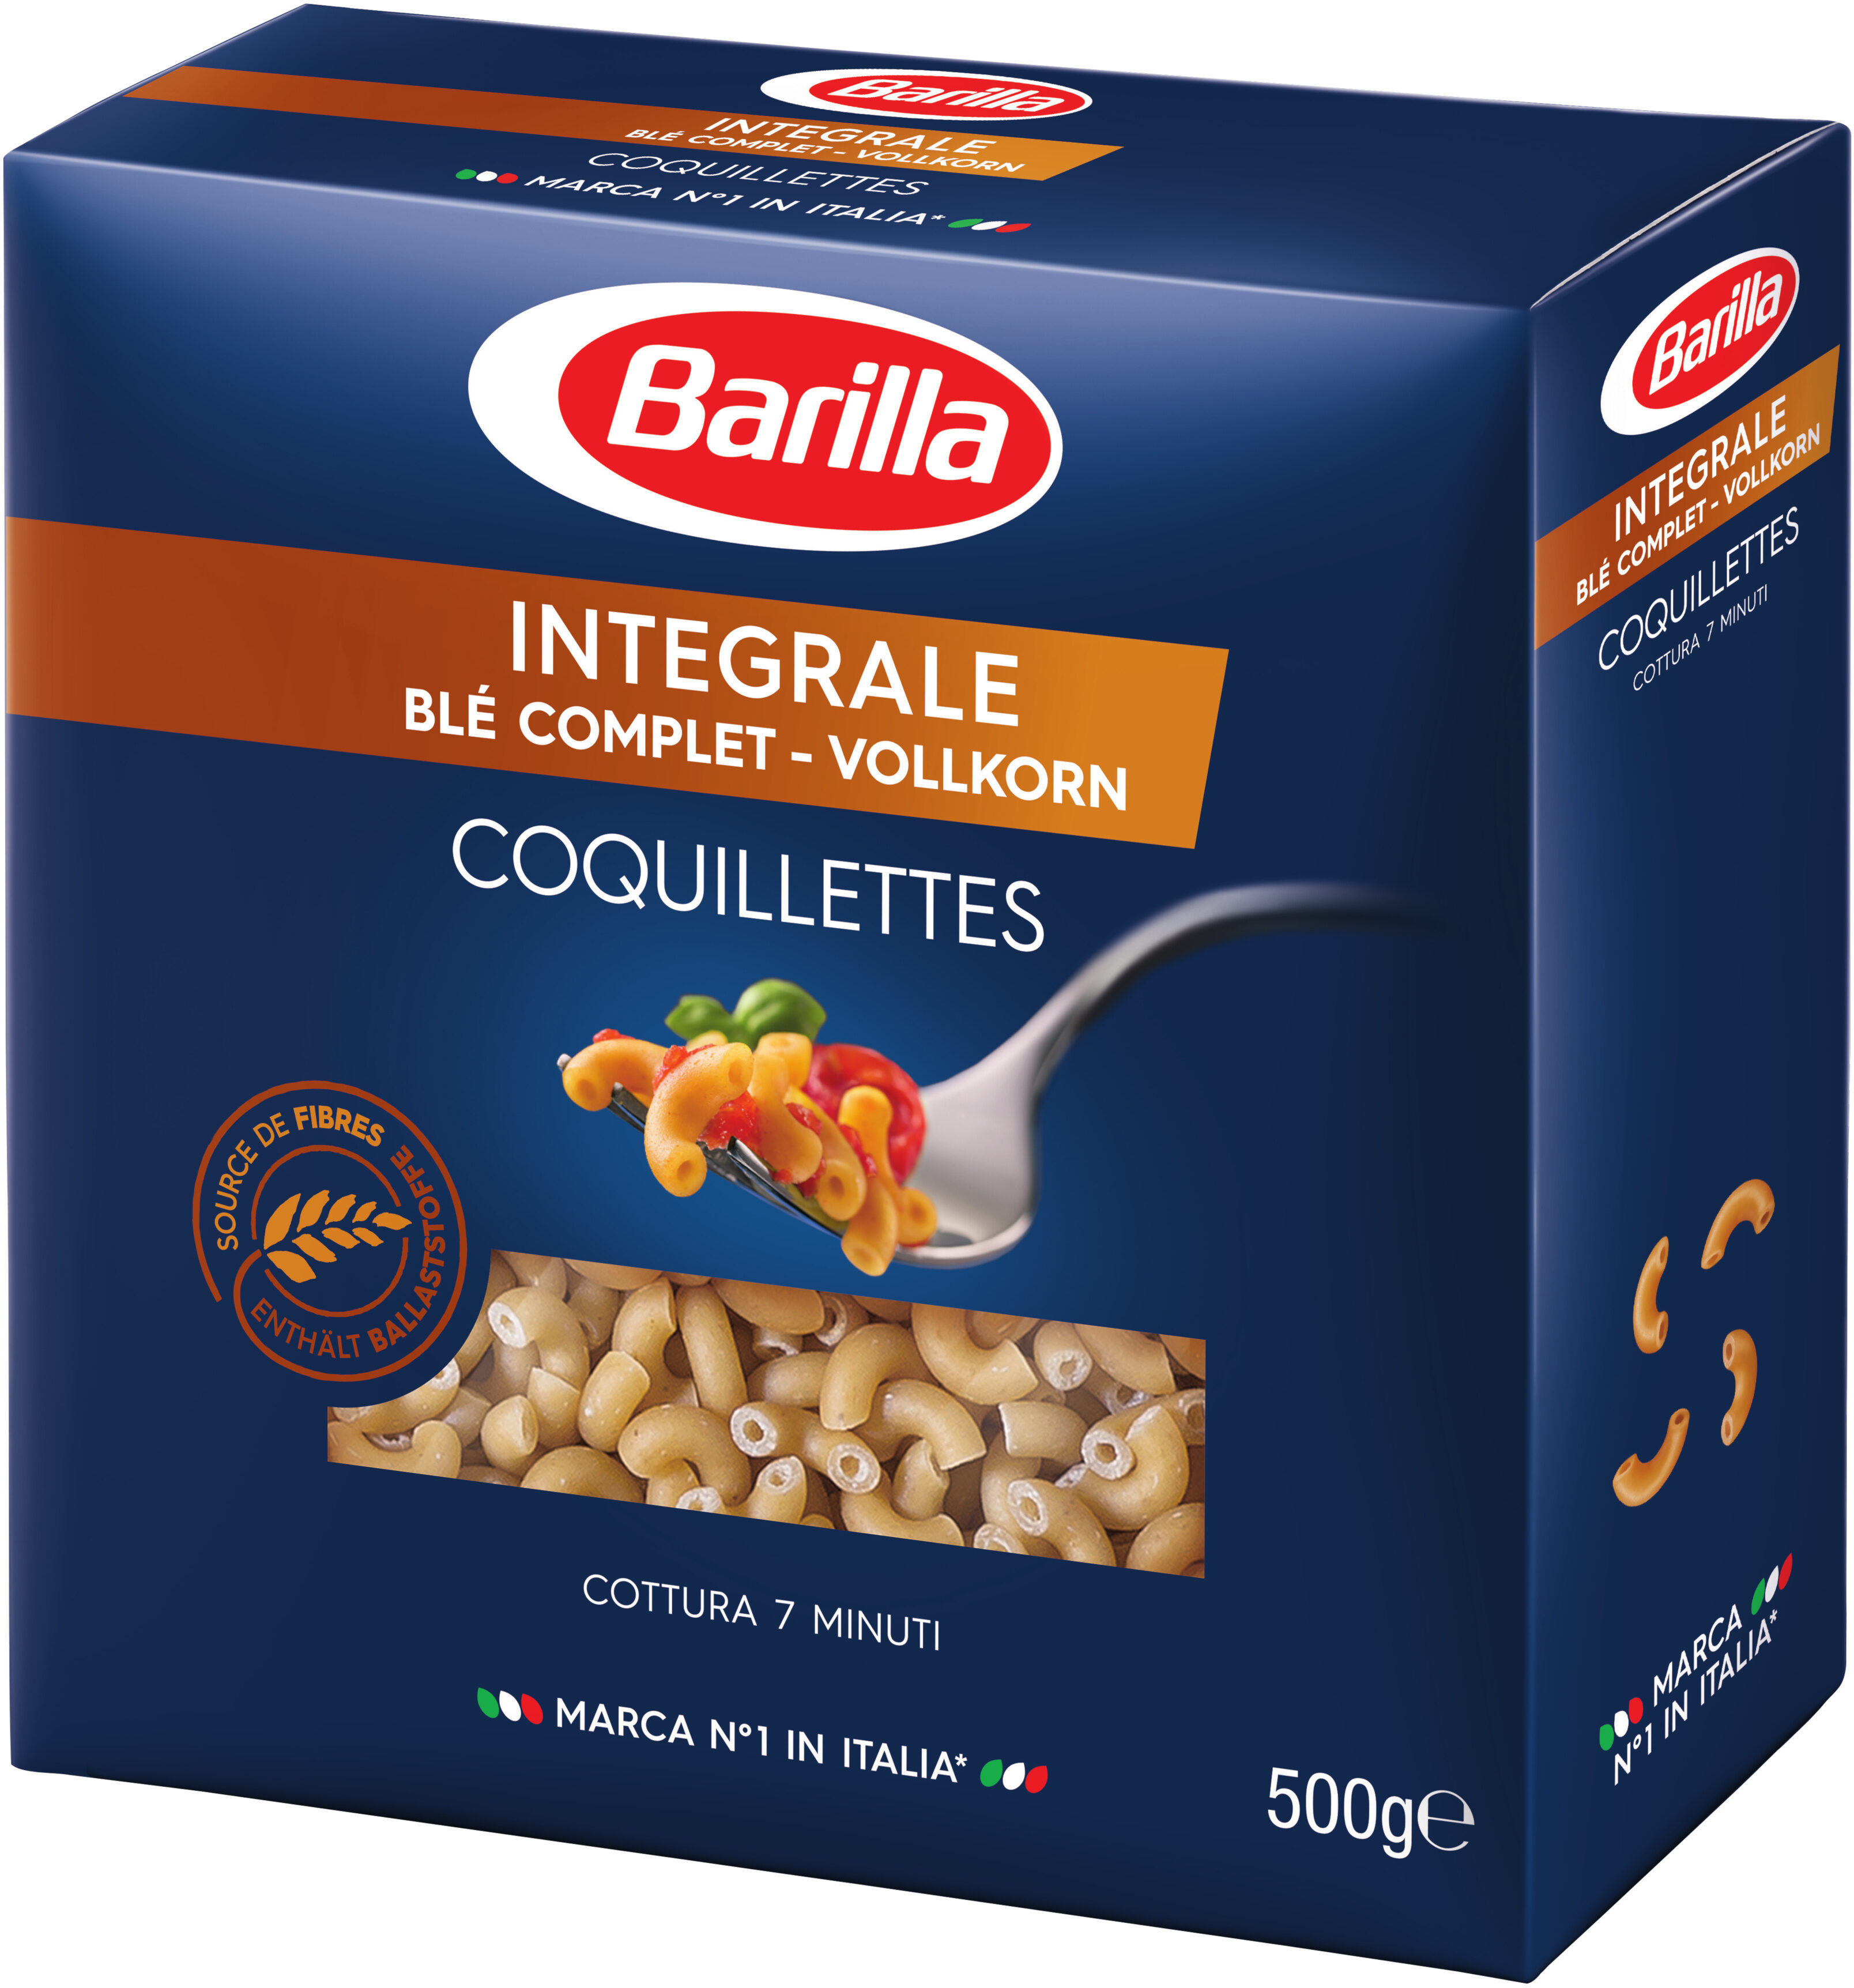 Barilla pates integrale coquillettes au ble complet 500g - Produit - fr